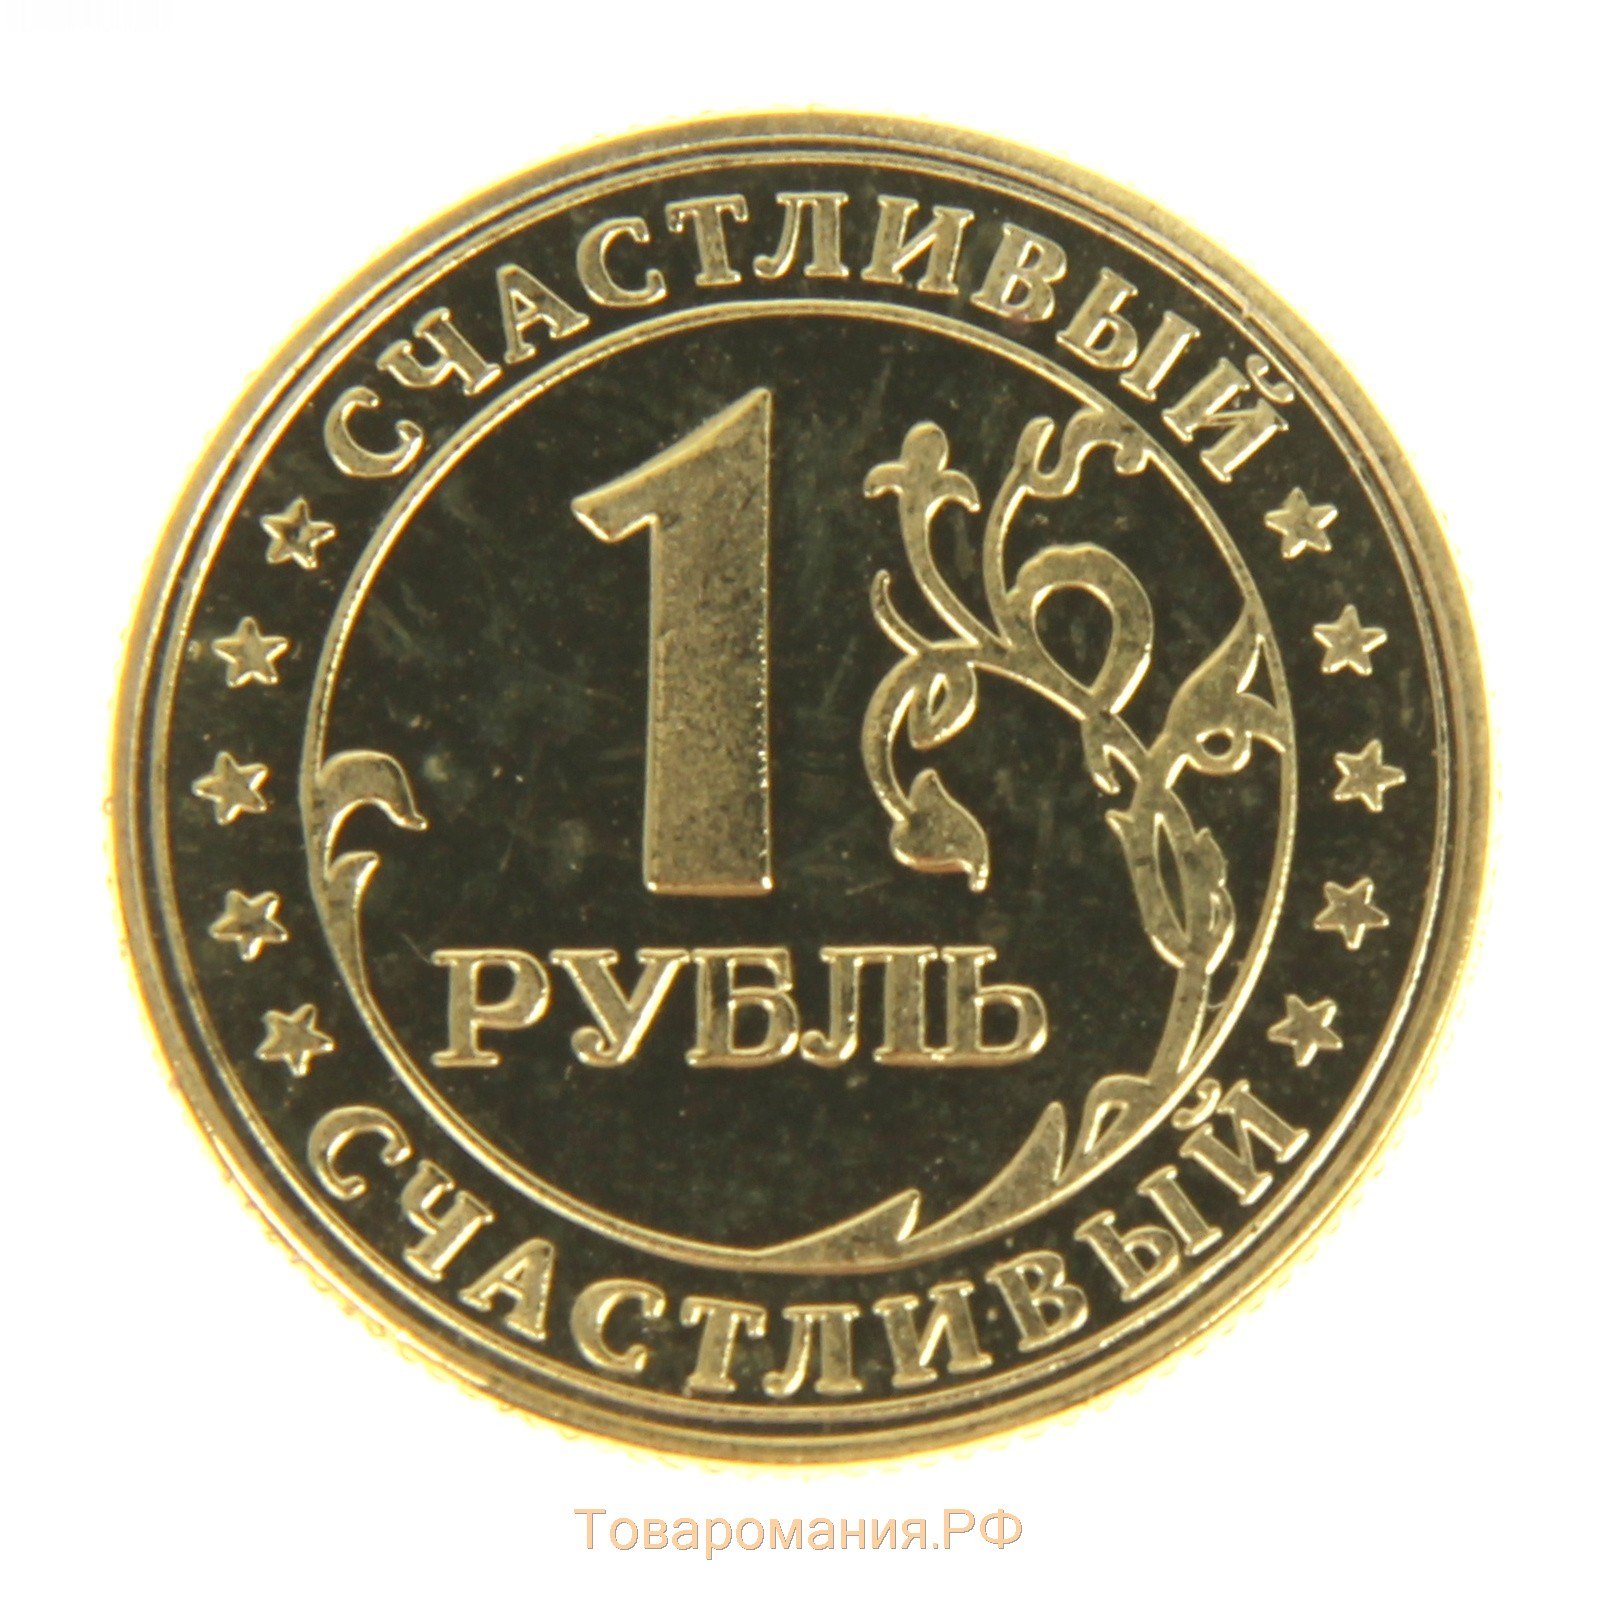 Вк 1 рубль за 3. Монеты. Изображение монетки. Рубль. Монеты для детей.